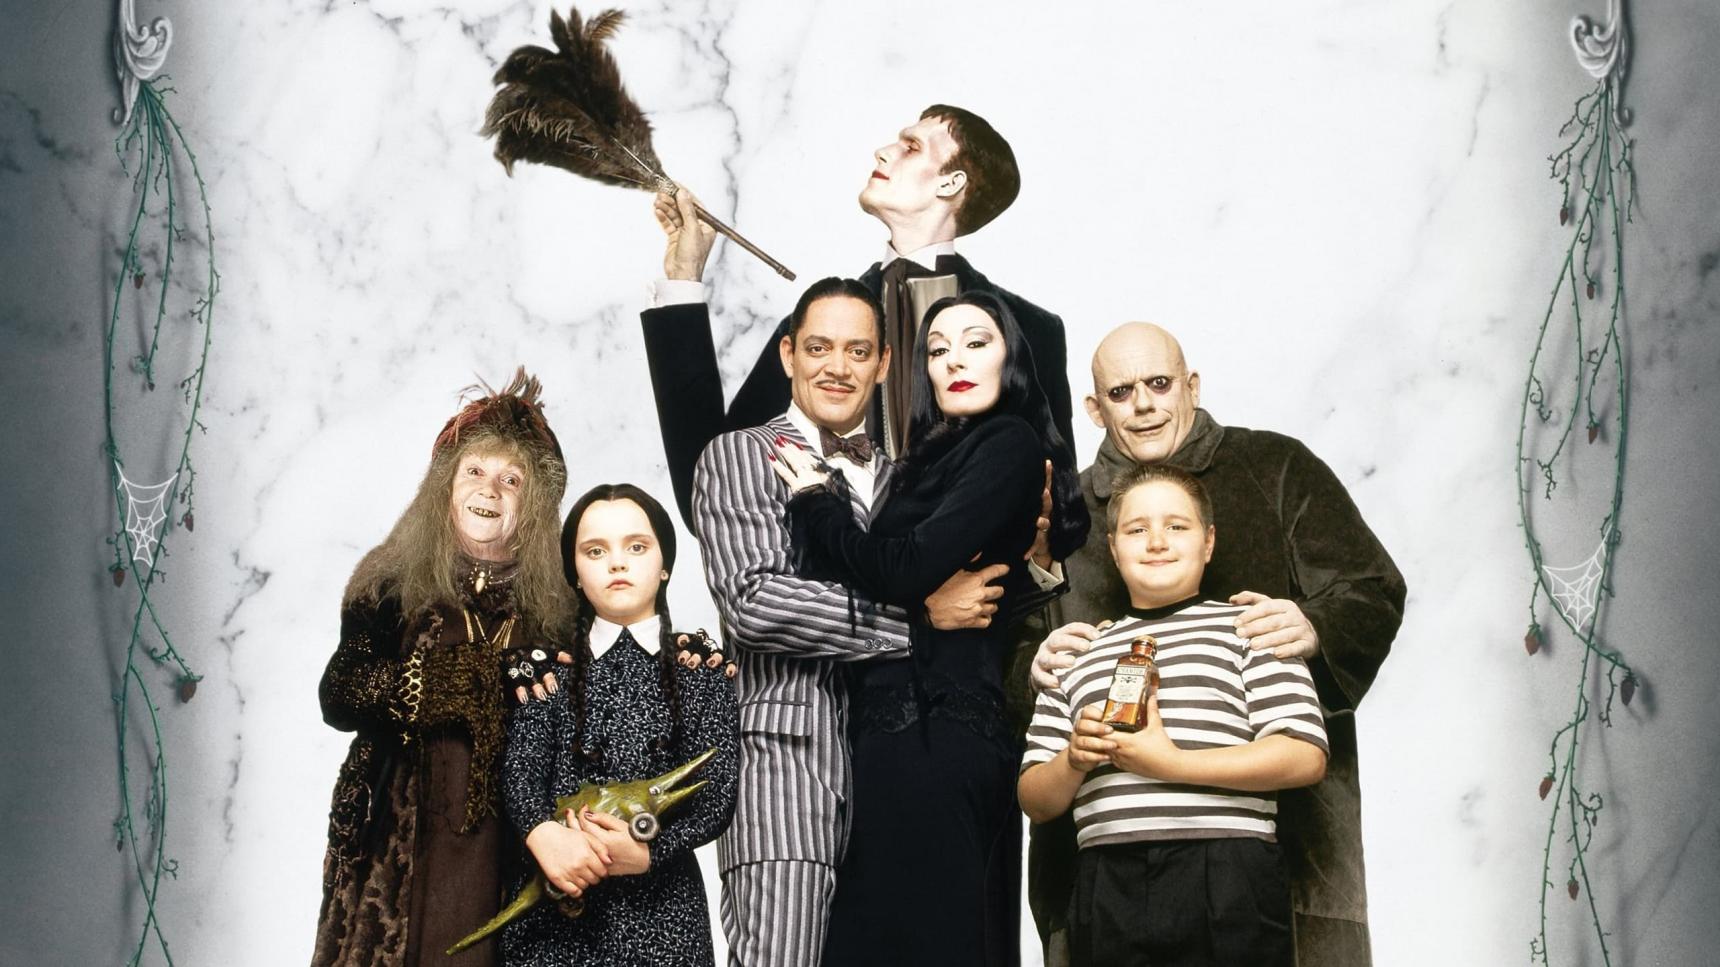 Fondo de pantalla de la película La familia Addams en Cliver.tv gratis